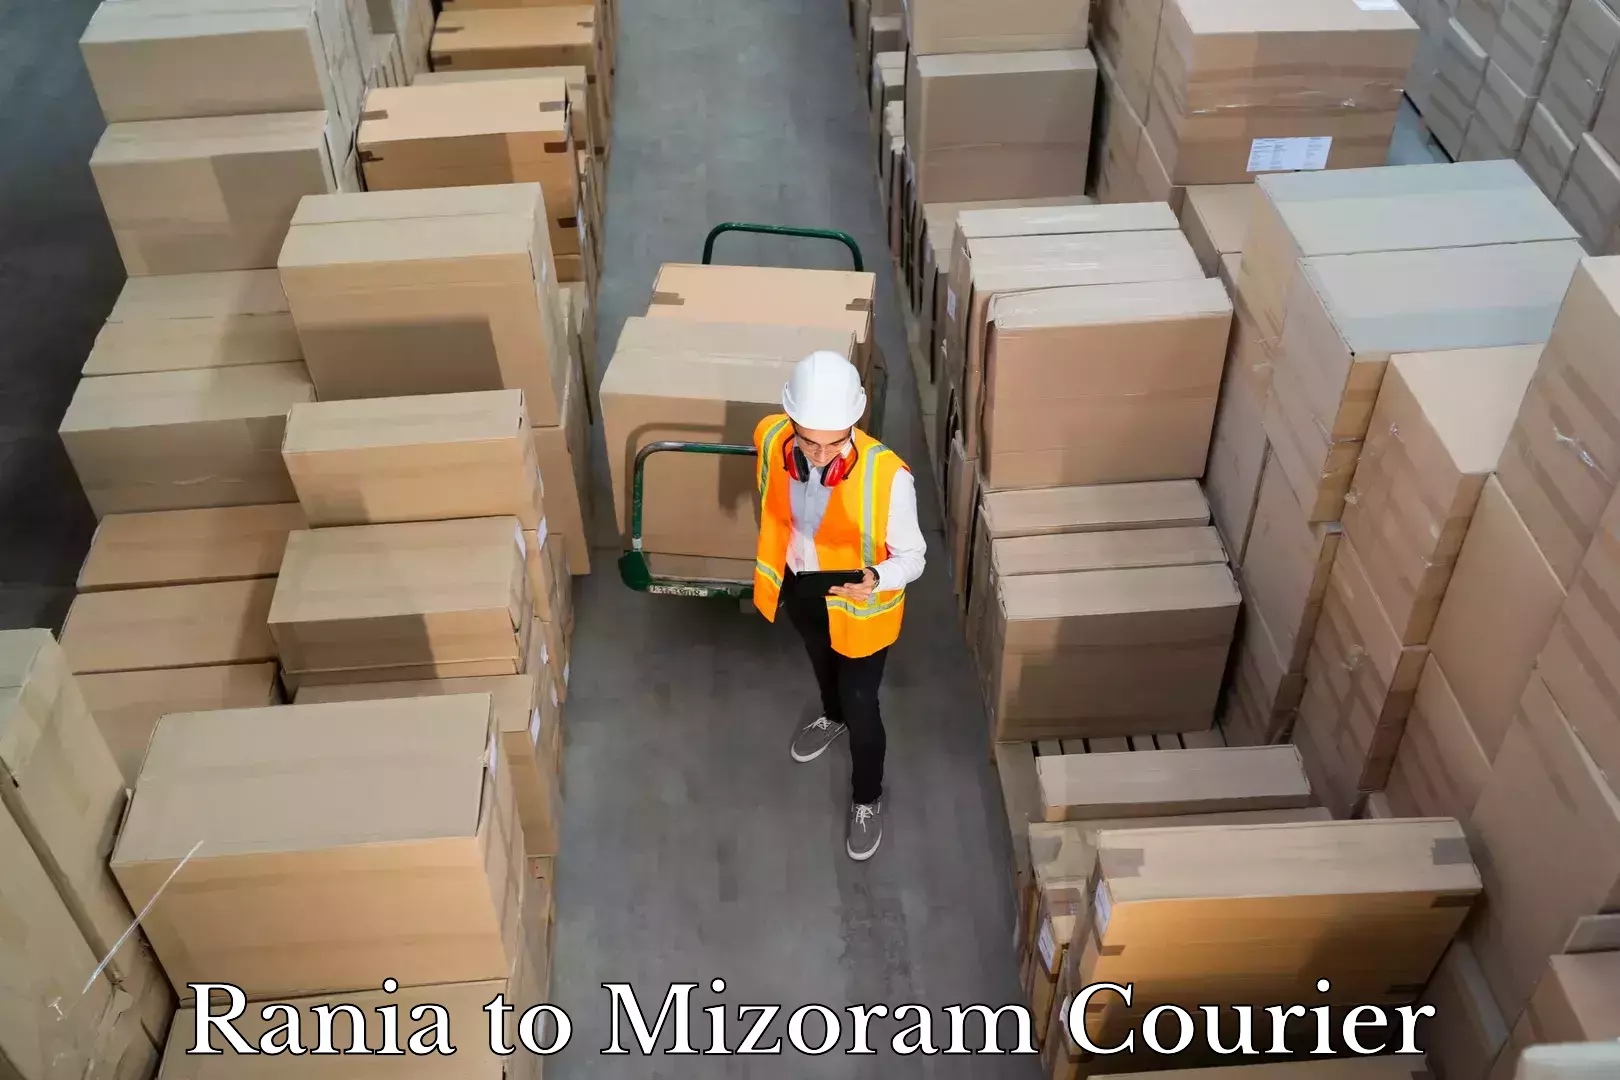 Luggage transport service Rania to Mizoram